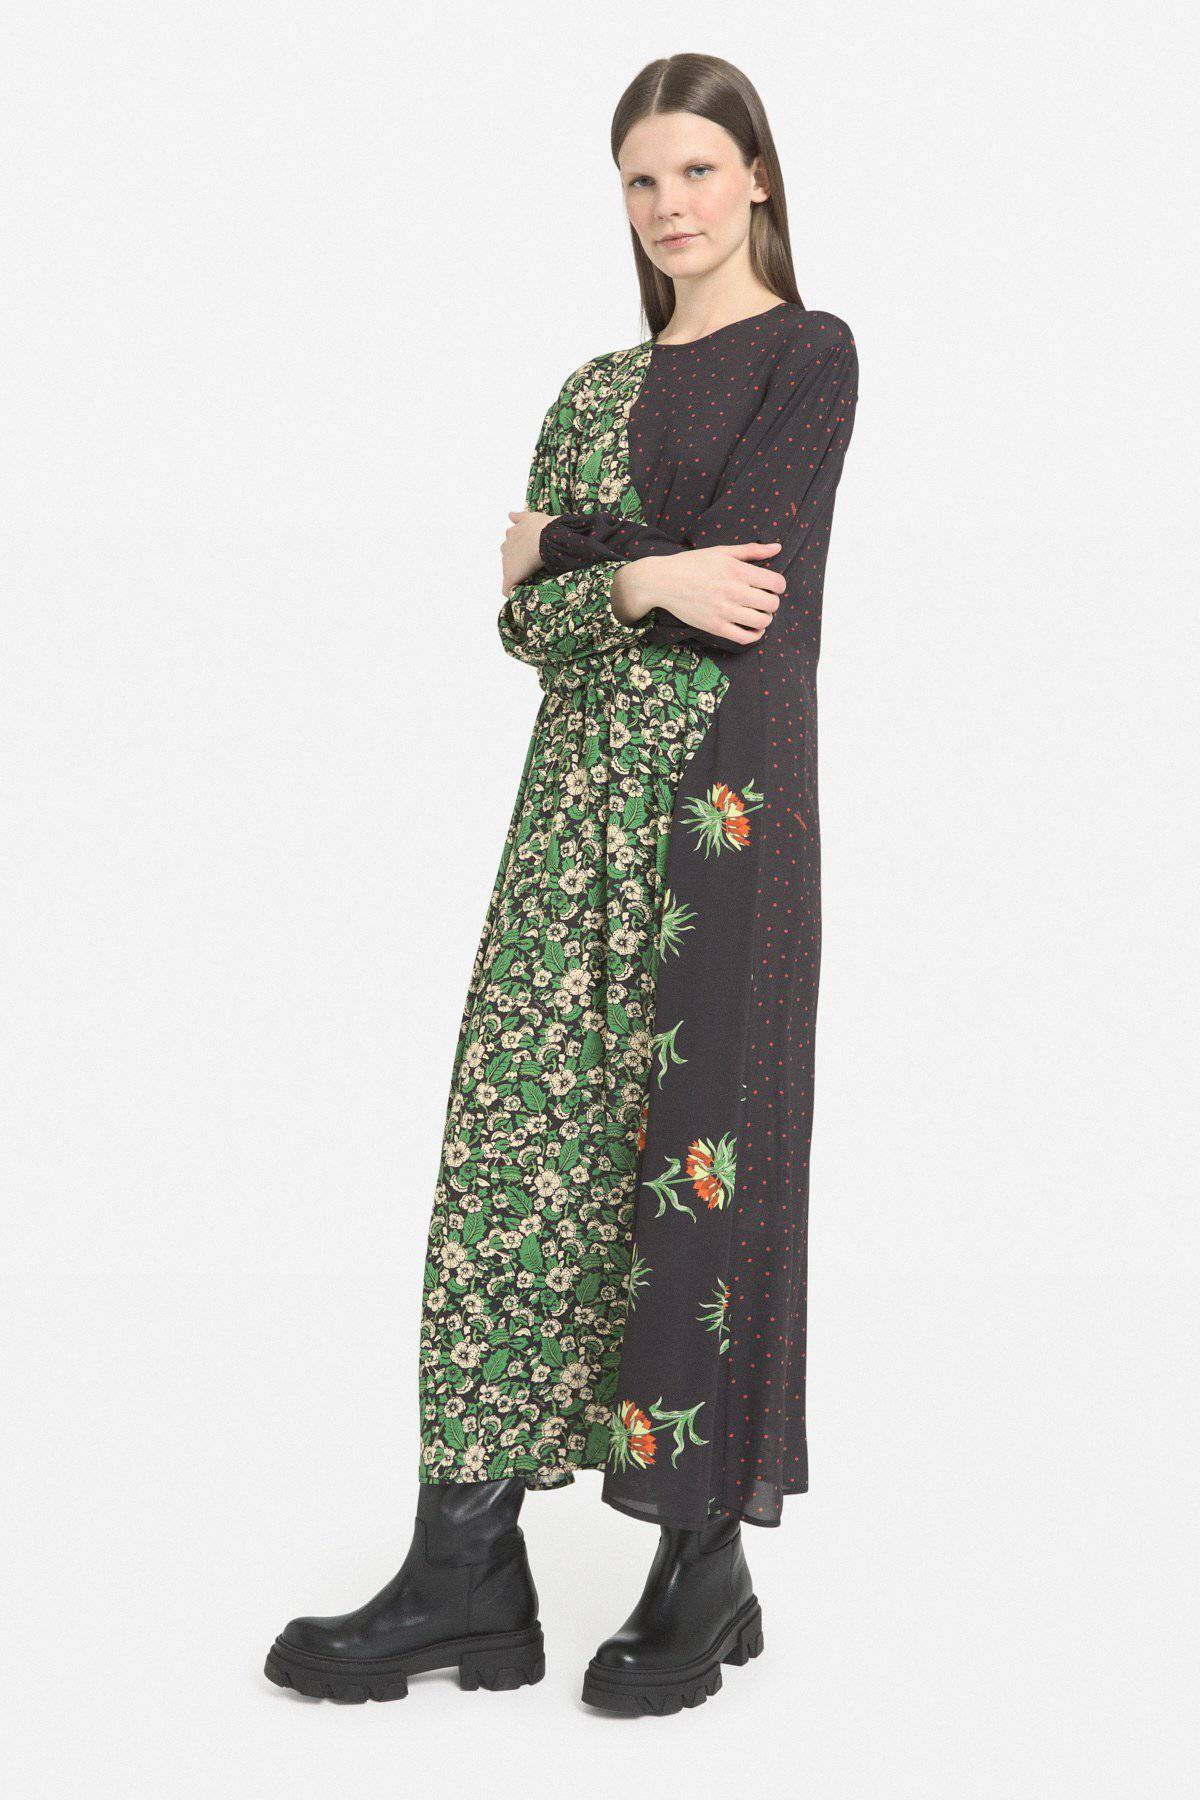 Vestido largo lunares y flores Ottod´ame - Bayolo Concept Store